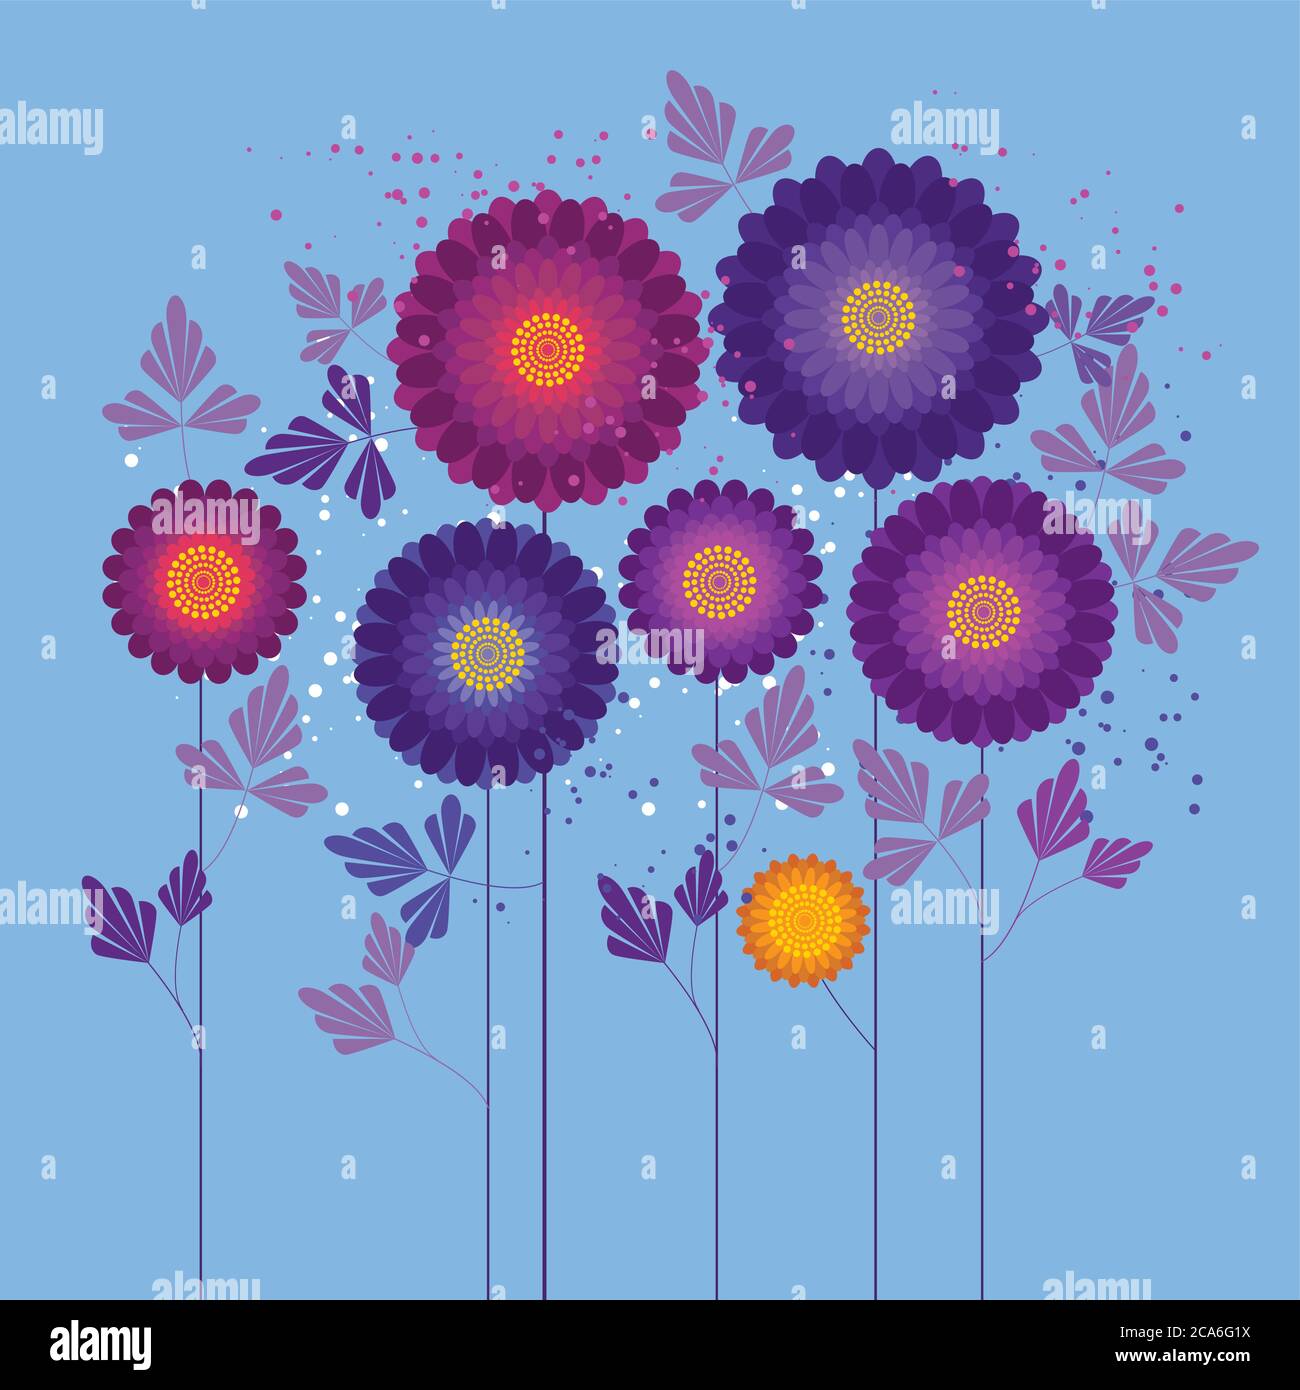 Illustrazione astratta dei colori vettoriali dei fiori autunnali. Fiori geometrici con foglie sui gambi. Fiori di crisantemo rosa, giardino primaverile. Purpl. Di margherite Illustrazione Vettoriale